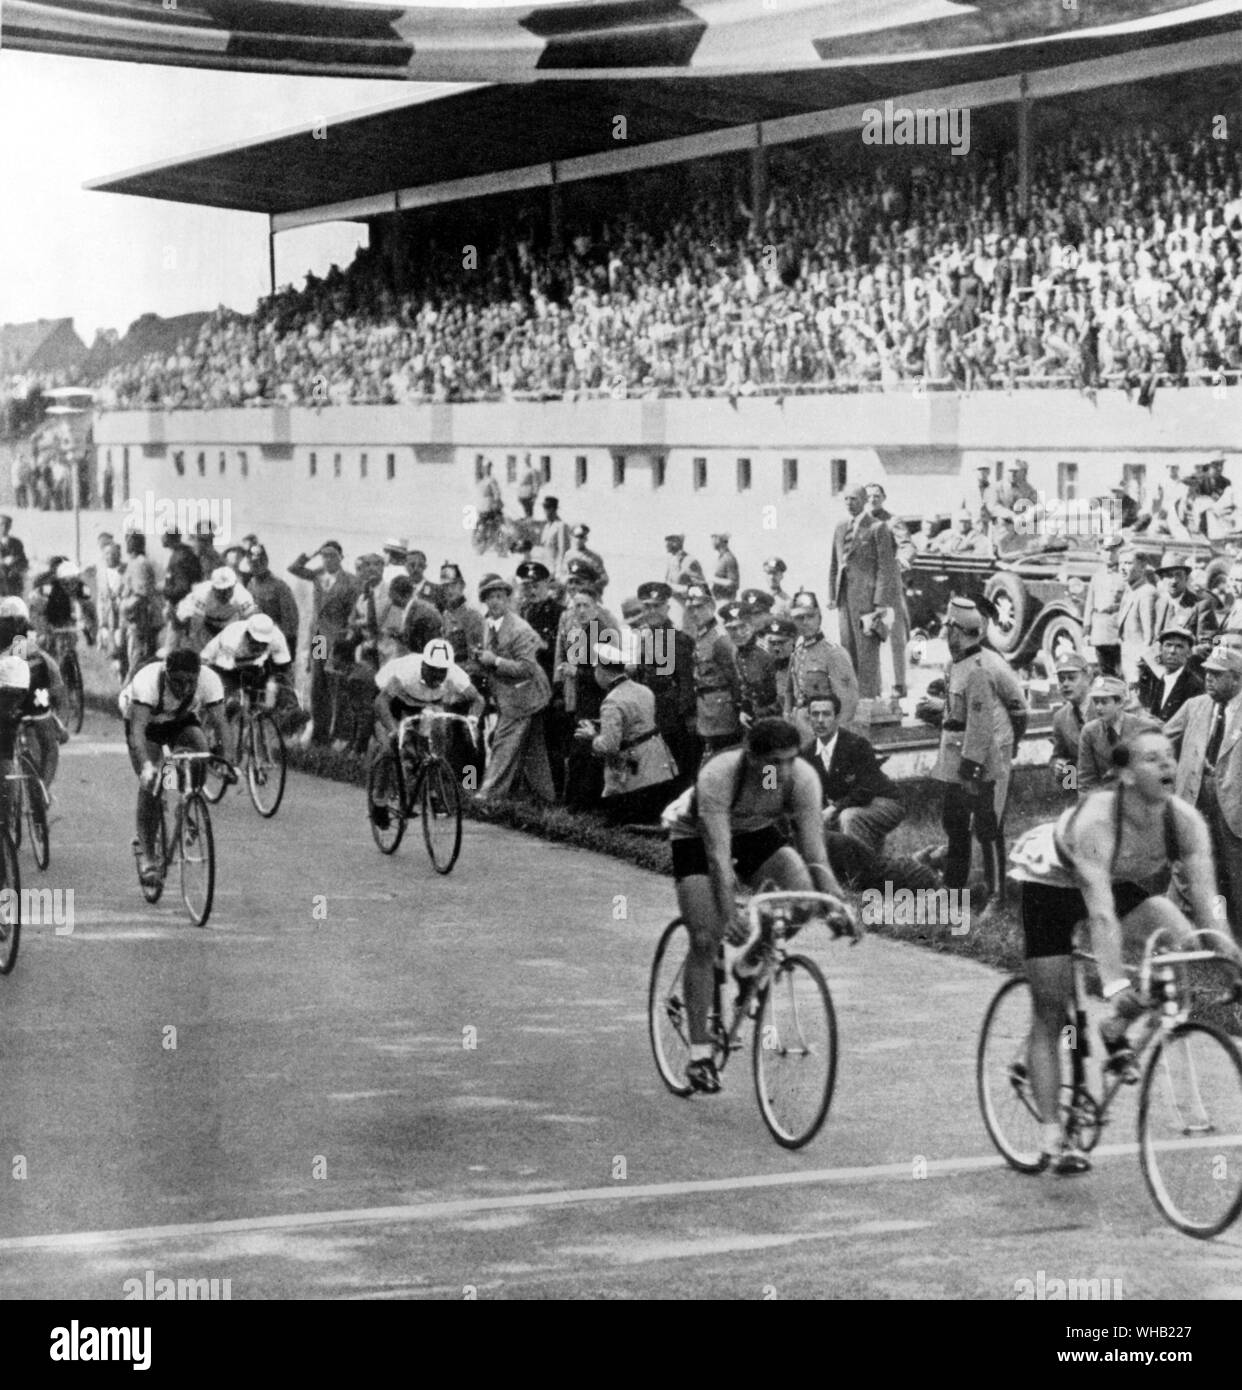 Cycle Road Race Charpentier (Frankreich) zuerst durch die Ziellinie Olympia Berlin 1936 Stockfoto